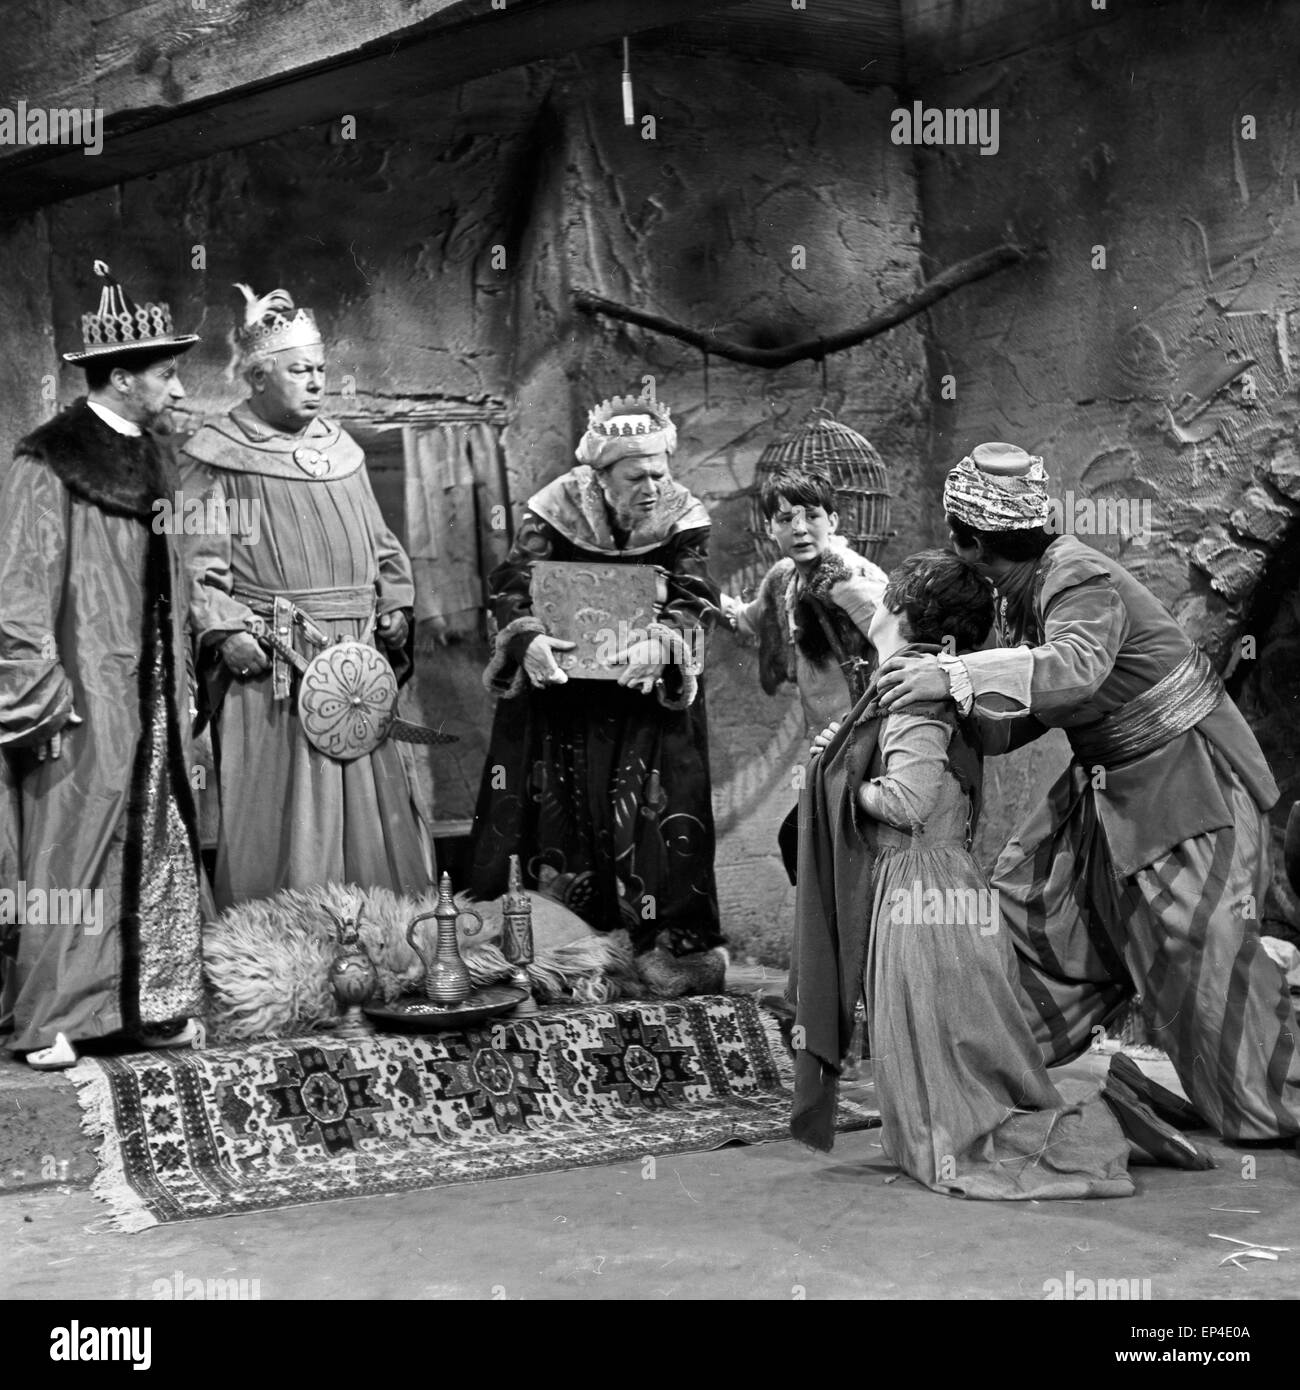 Amahl und die nächtlichen Besucher, Fernsehspiel, Deutschland 1958, Szenenfoto Stock Photo